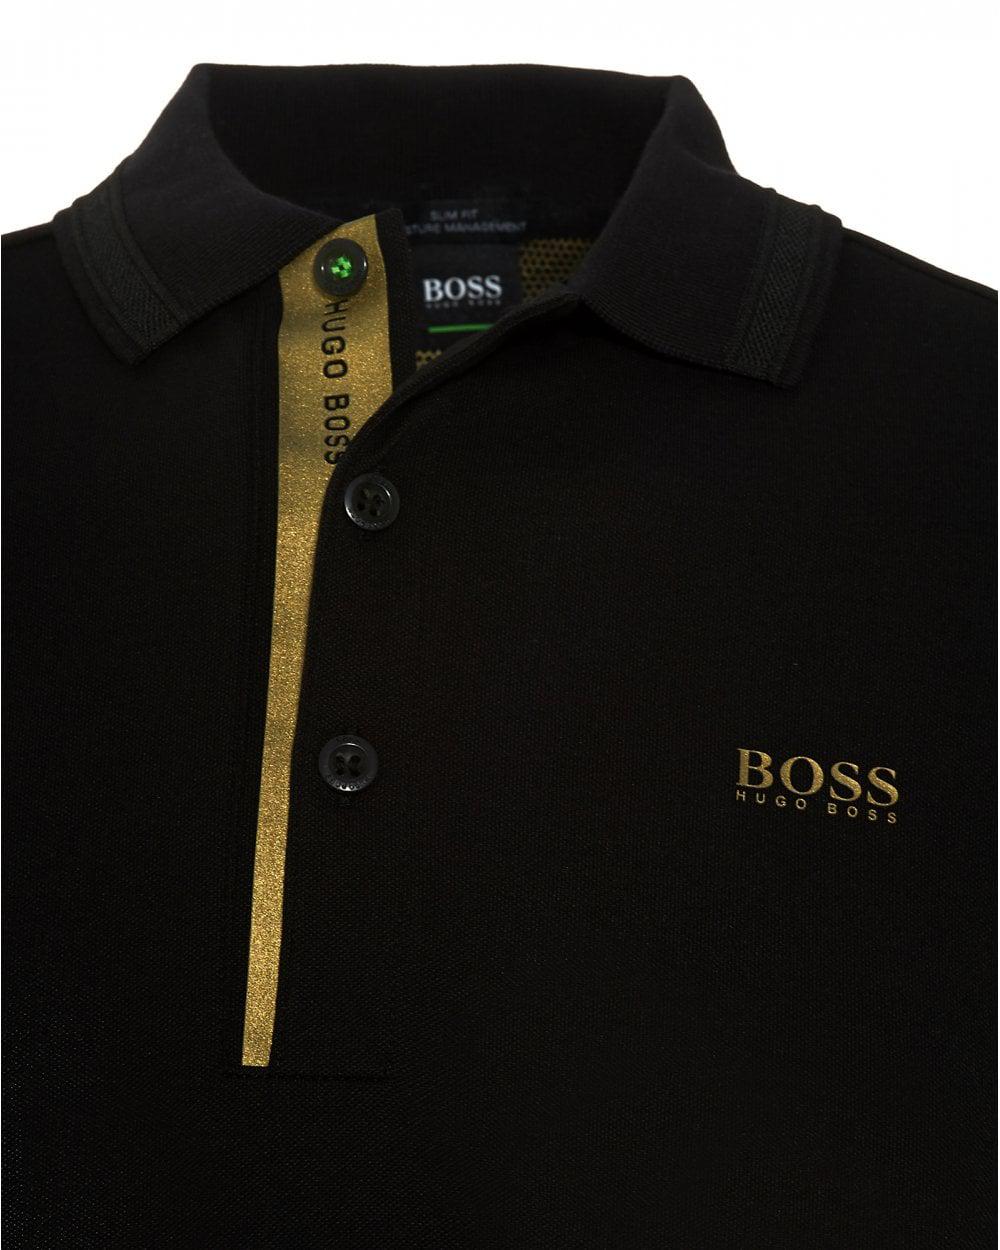 hugo boss t shirt black gold